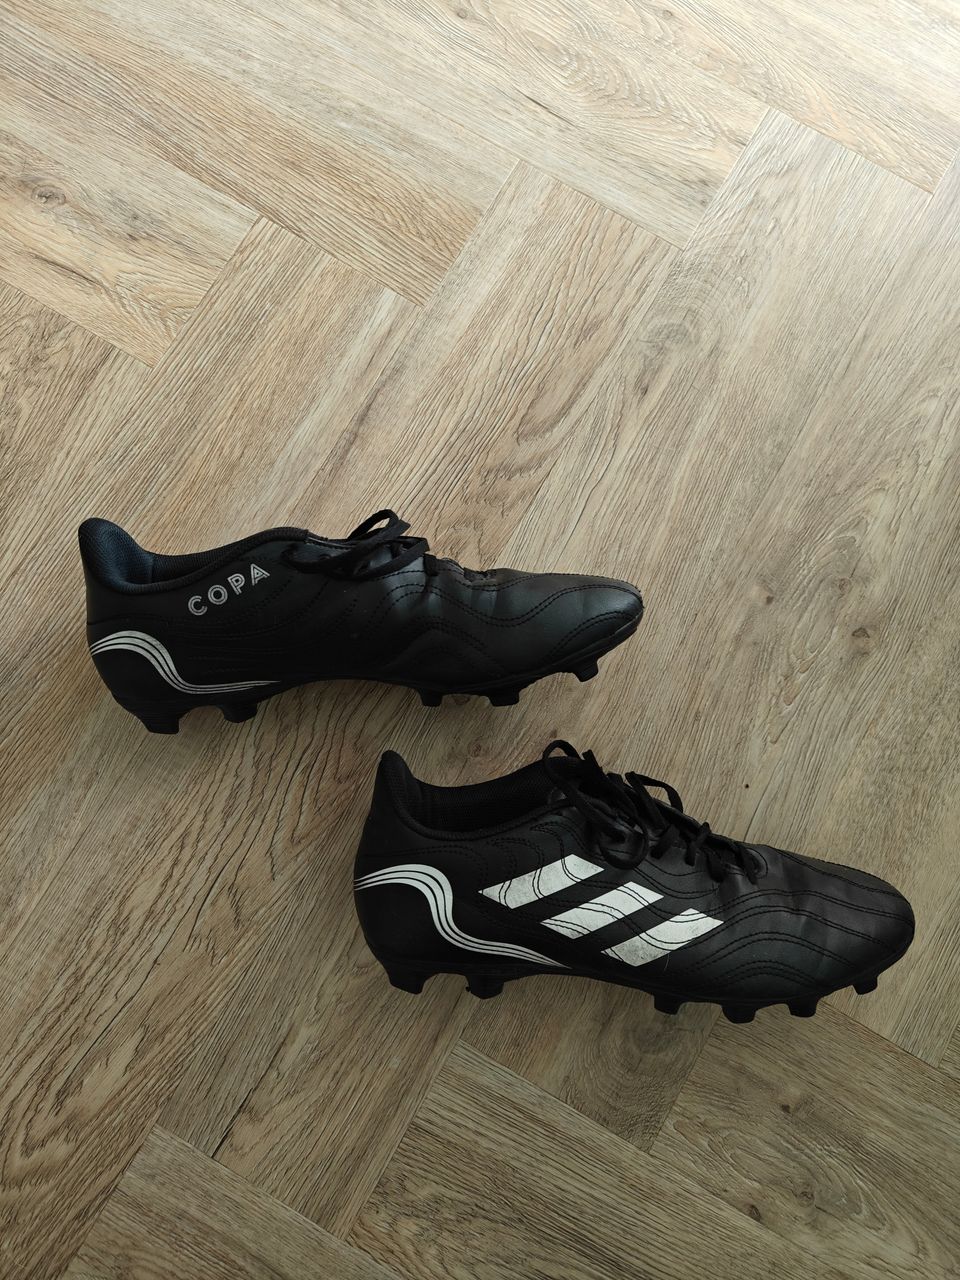 Adidas Copa jalkapallo kengät